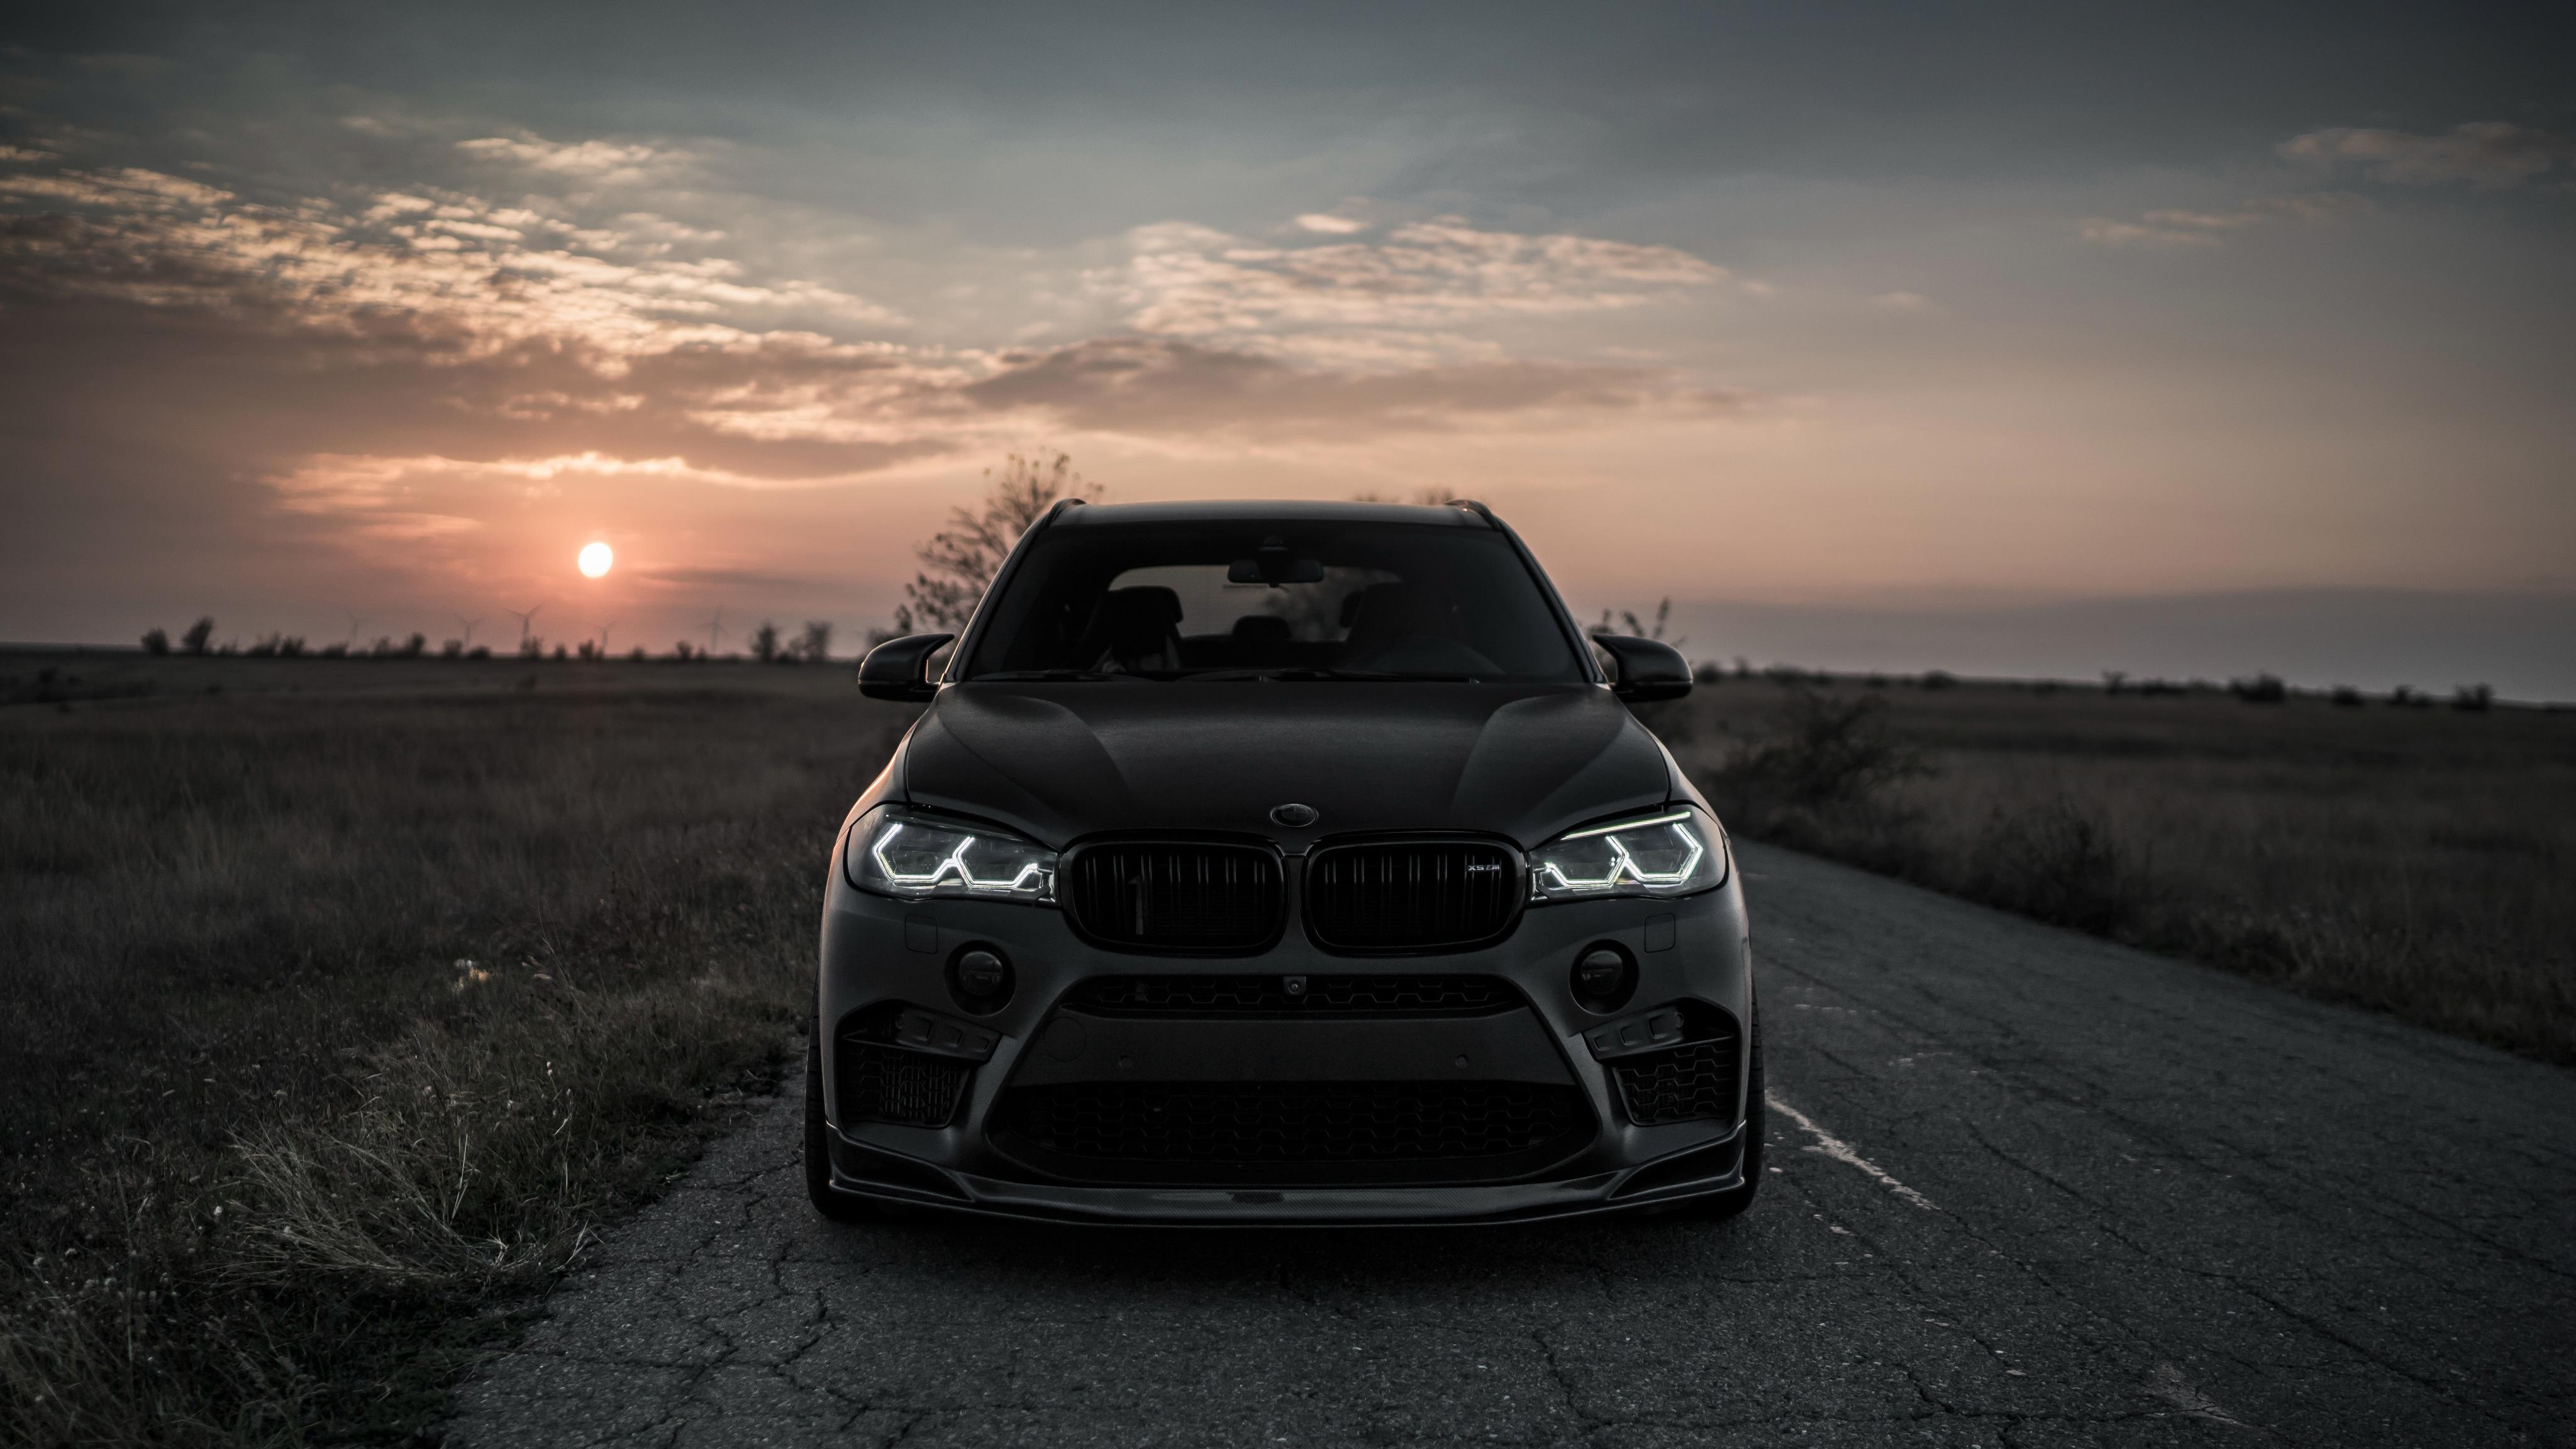 4096 x 2304 · jpeg - 2018 Z Performance BMW X5 M 4K 2 Wallpaper | HD Car Wallpapers | ID #9549